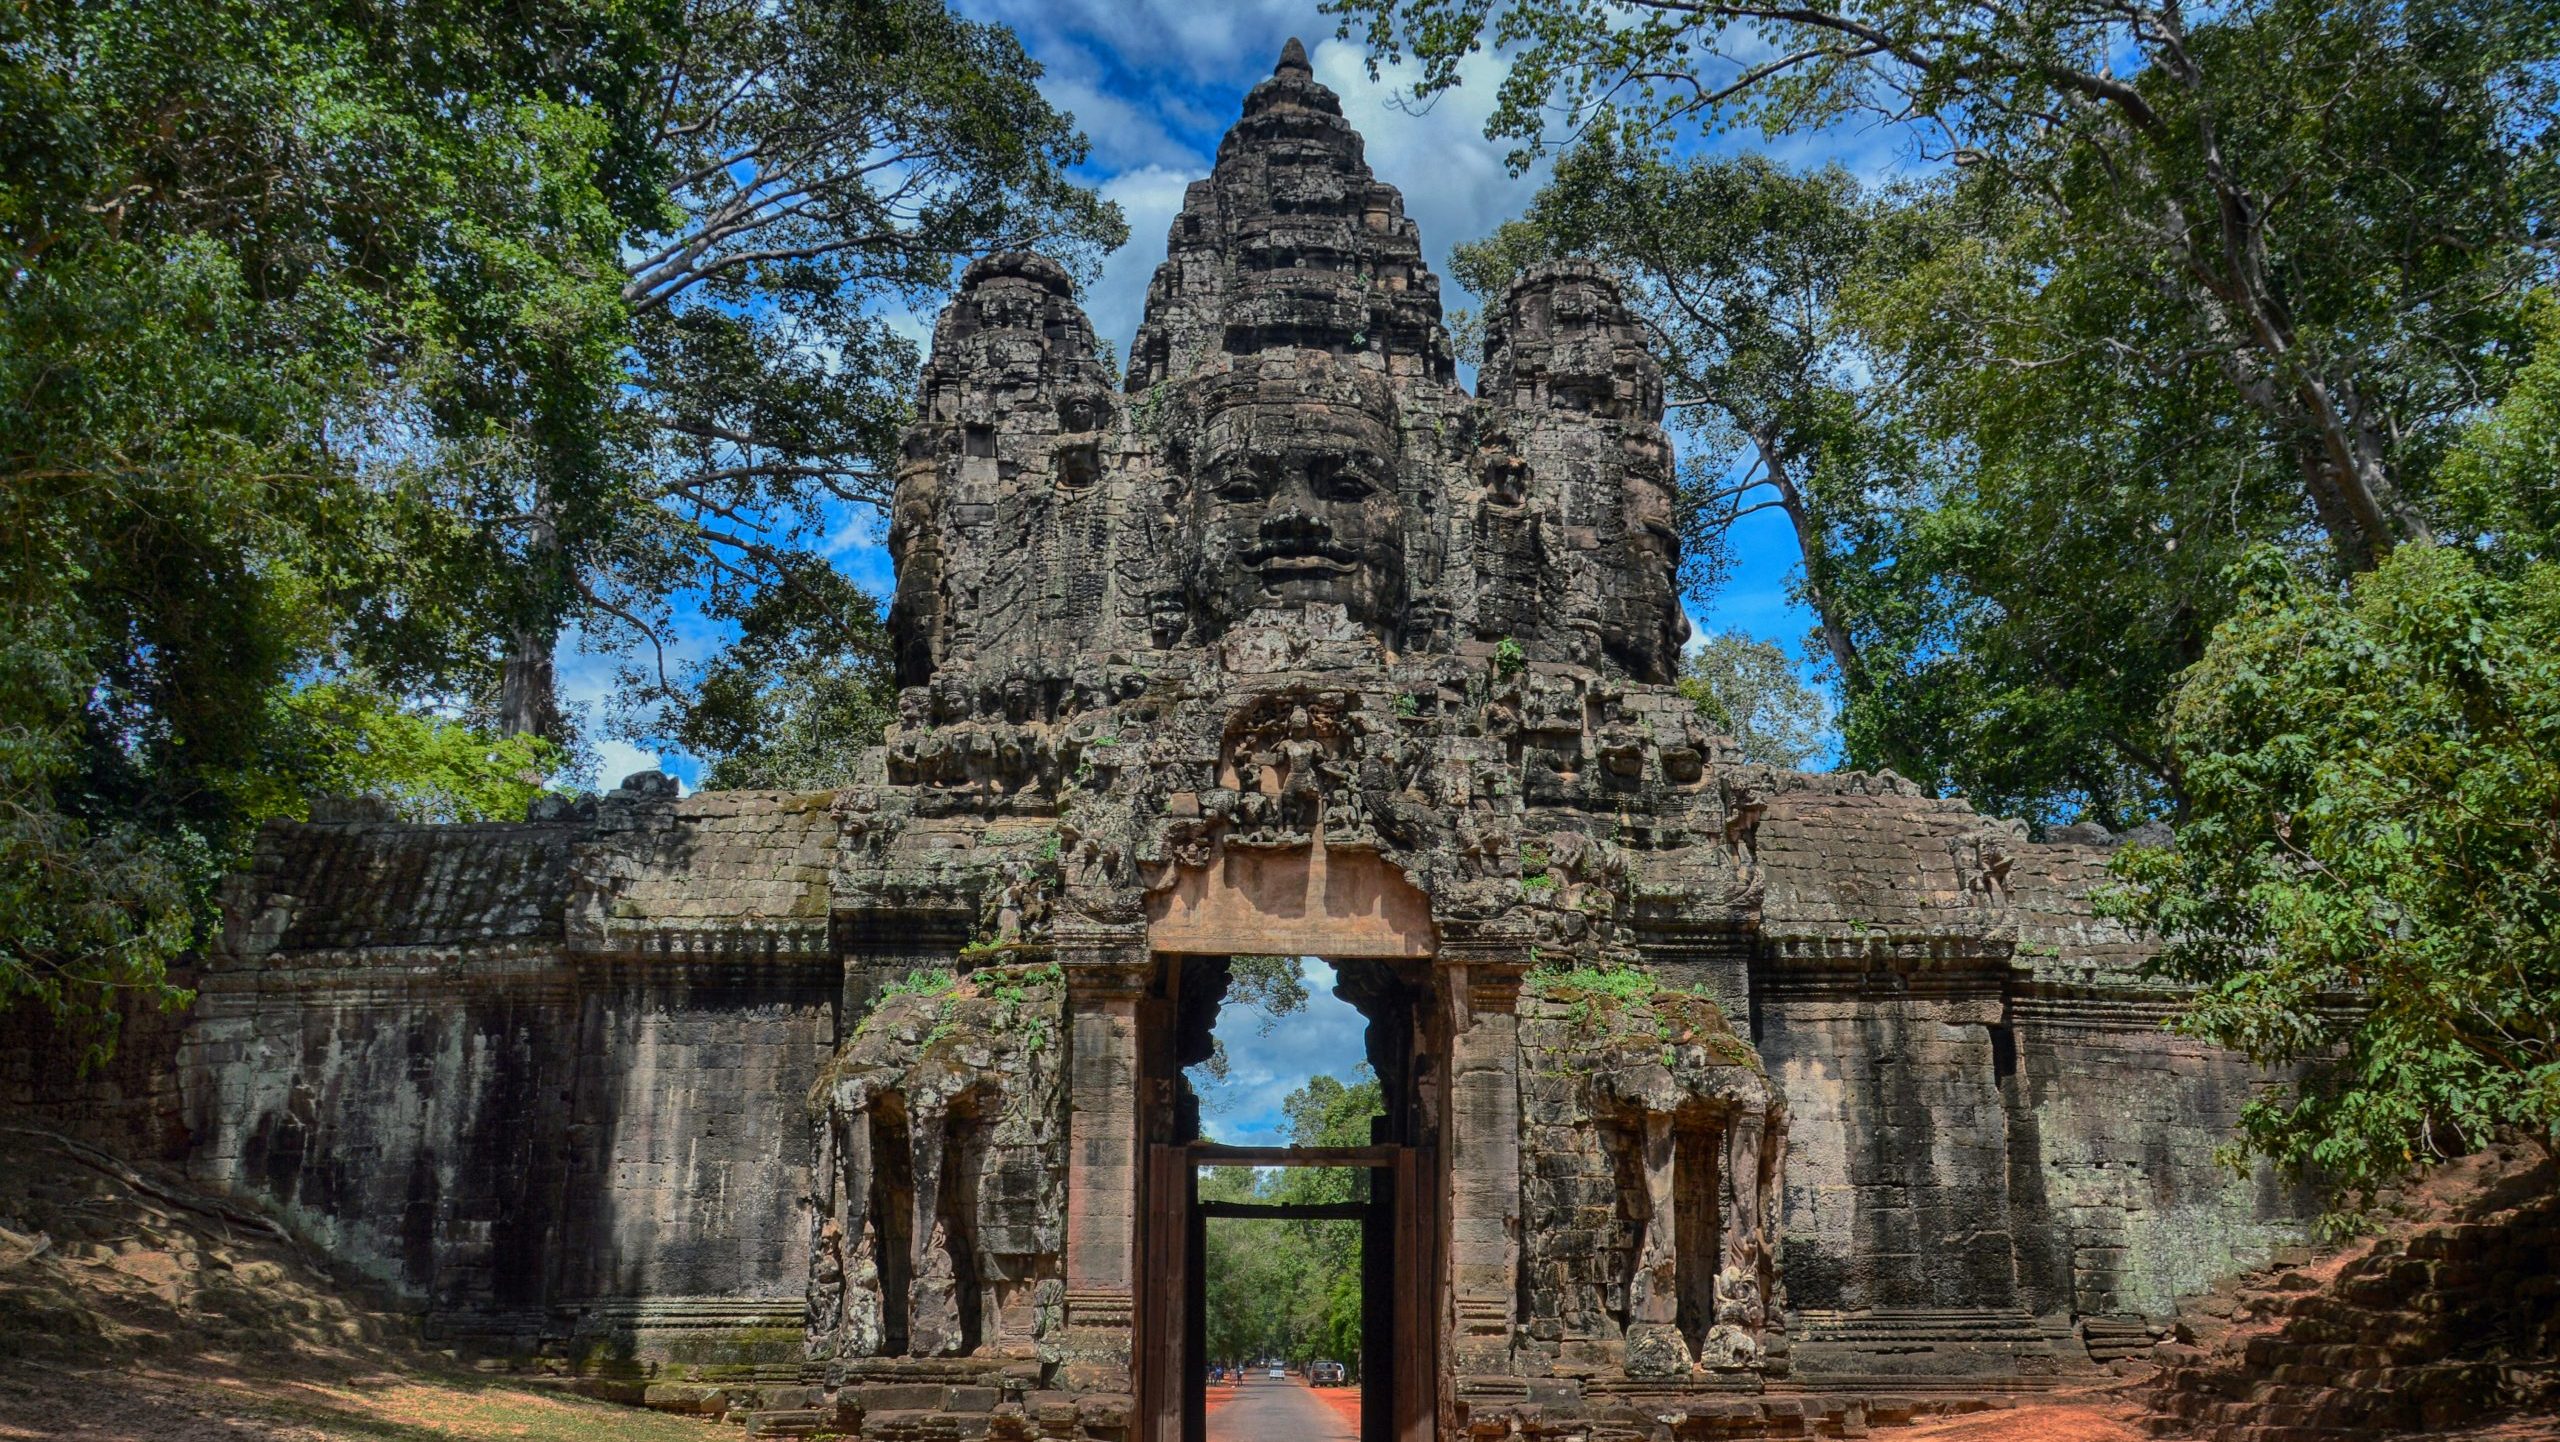 tourism board cambodia